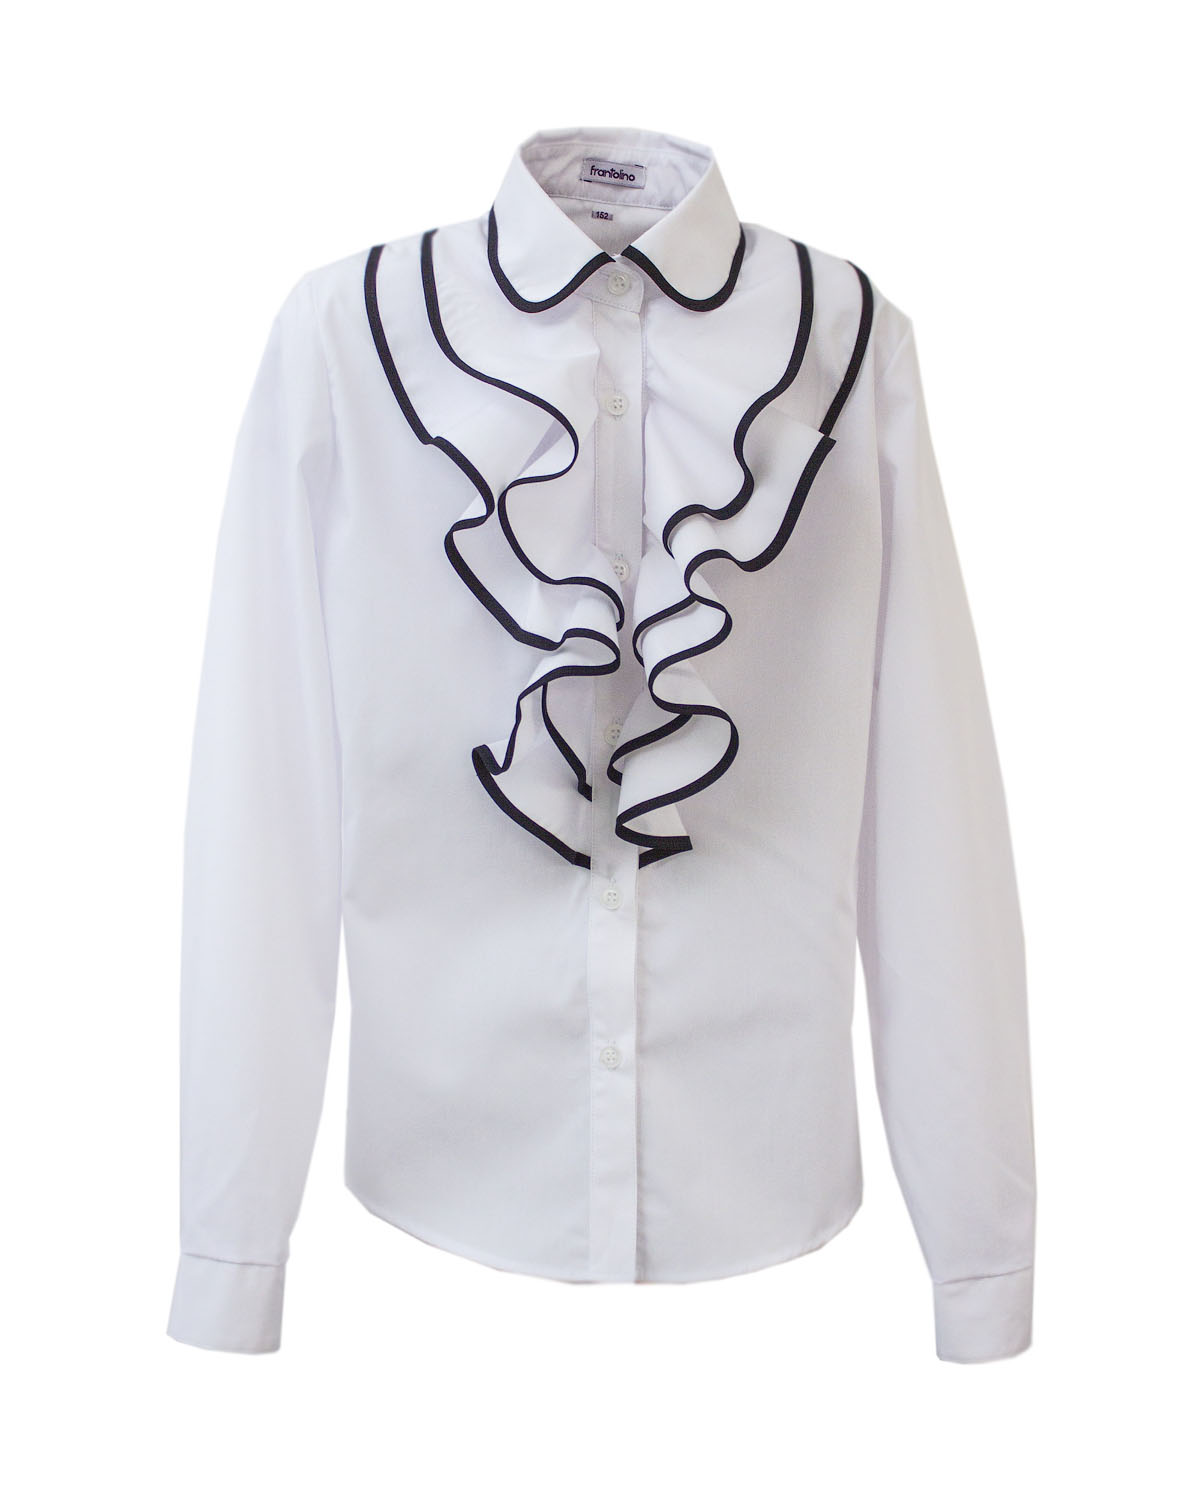 Блуза з воланами Frantolino біла 1205-001 - ціна